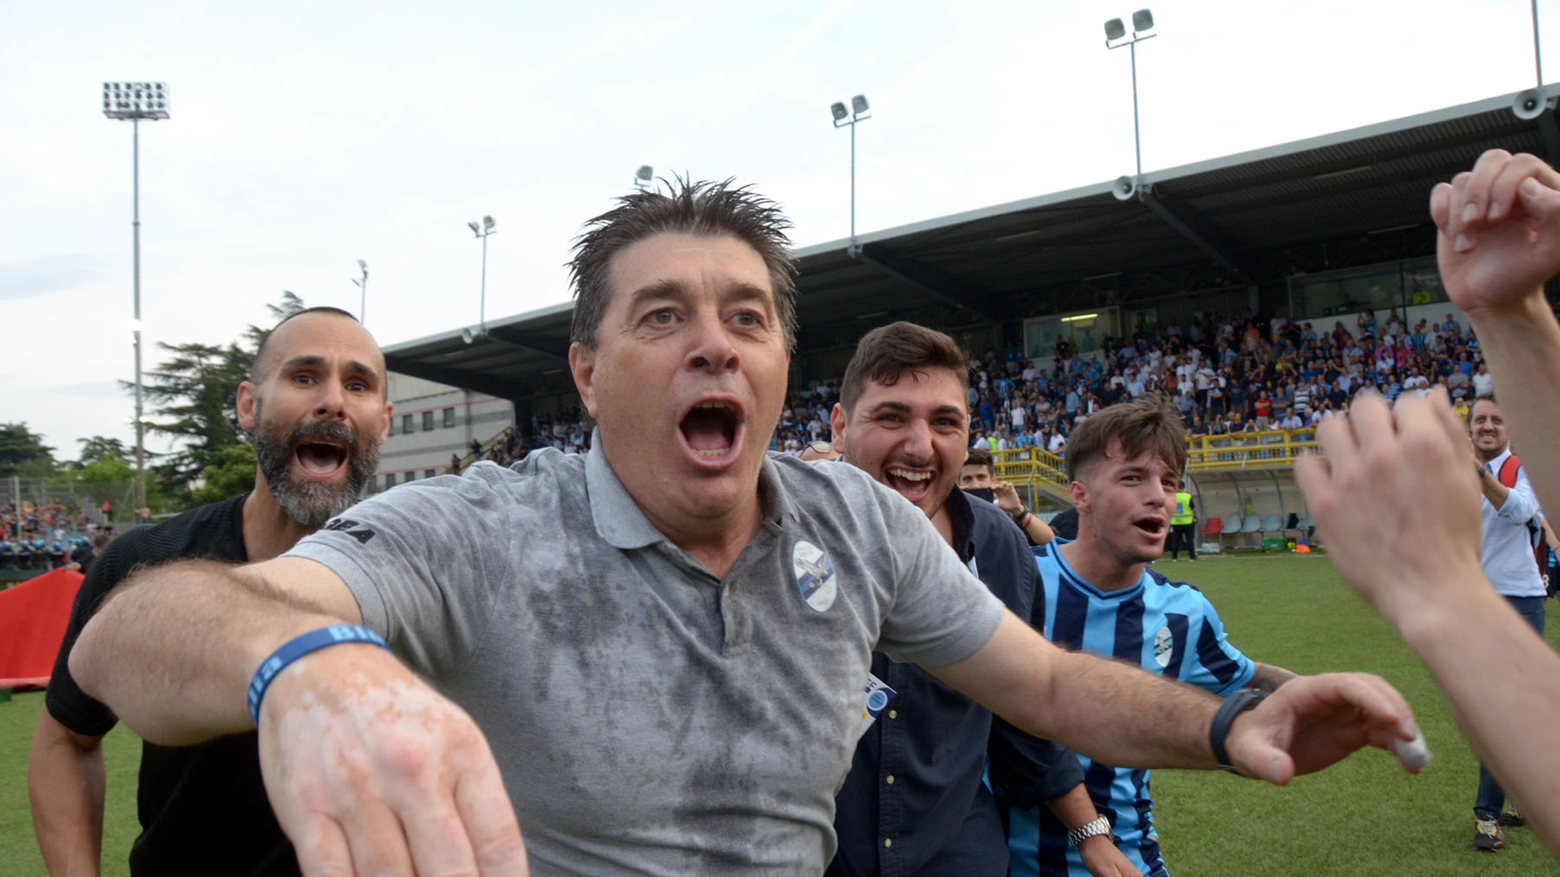 Luciano Foschi, tecnico bluceleste festeggia la promozione dopo il successo contro il Foggia nella gara di ritorno di domenica